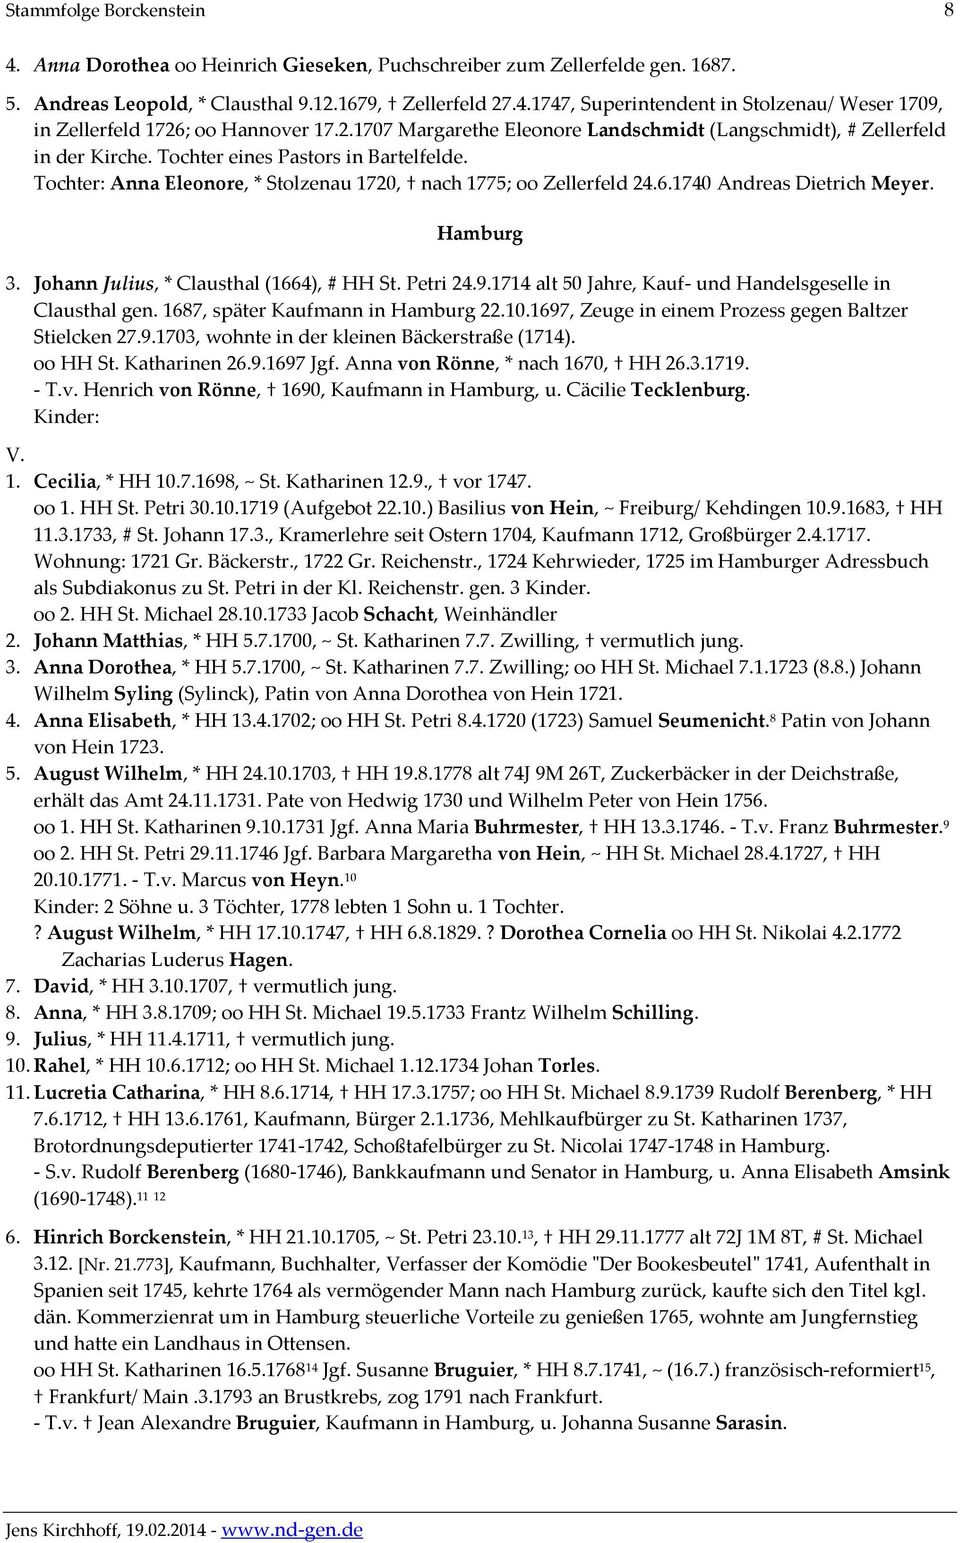 1740 Andreas Dietrich Meyer. Hamburg 3. Johann Julius, * Clausthal (1664), # HH St. Petri 24.9.1714 alt 50 Jahre, Kauf- und Handelsgeselle in Clausthal gen. 1687, später Kaufmann in Hamburg 22.10.